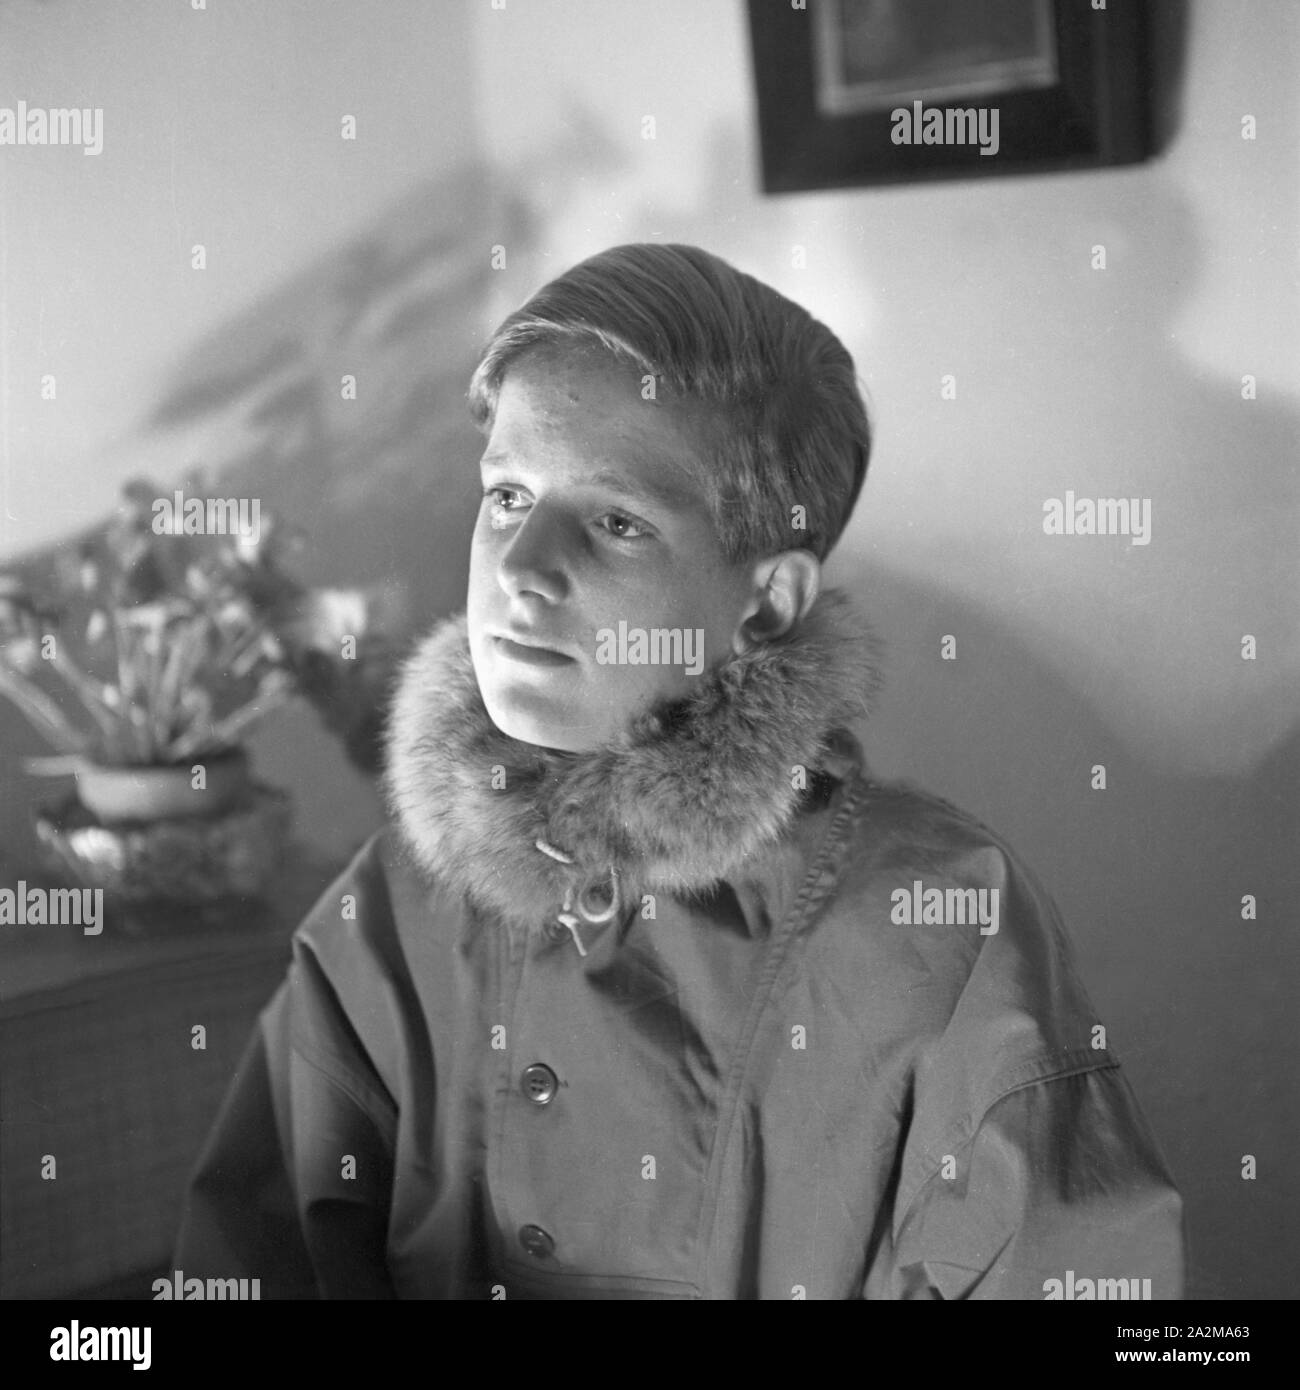 Porträt eines Jungen in Winterjacke mit Fellkragen, Deutschland 1940.  Portait of a boy in a winter jacket with fur collar, Germany 1940 Stock  Photo - Alamy